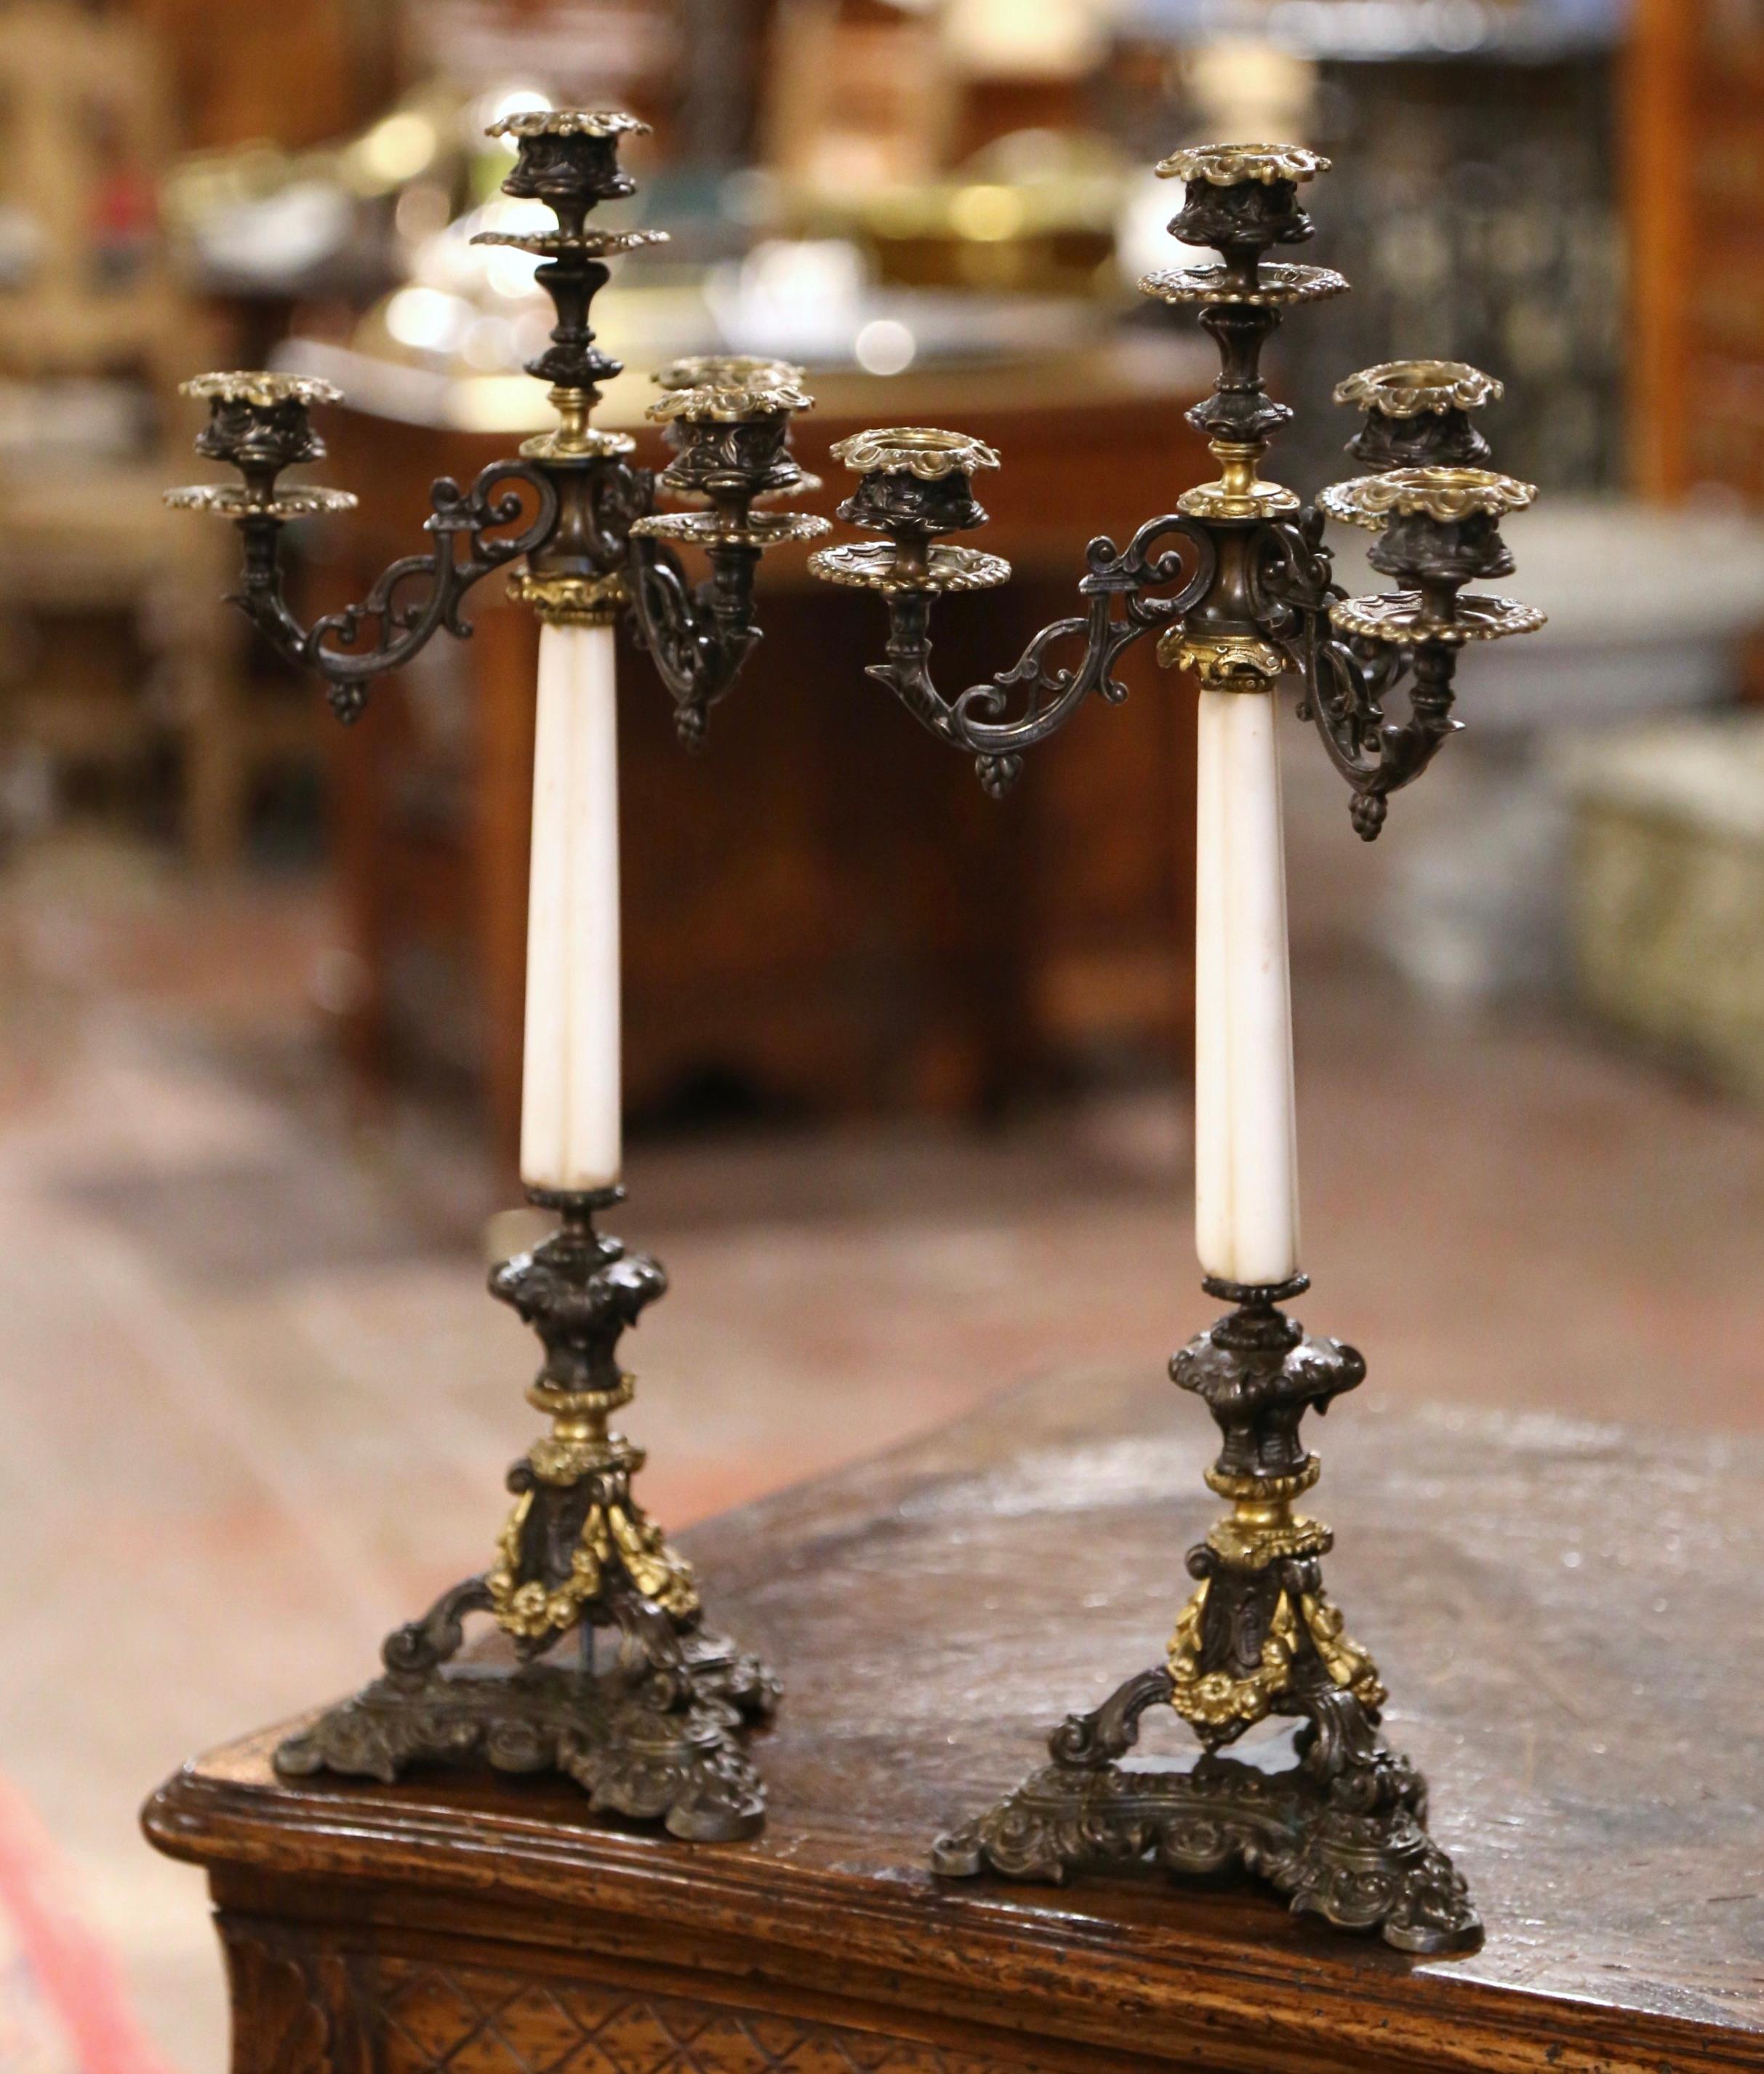 Décorez une console ou une cheminée avec cette élégante paire de chandeliers anciens. Fabriqué en France vers 1870, chaque candélabre repose sur trois pieds à volutes au-dessus d'une base tripode intégrale. La base complexe est ornée de décorations